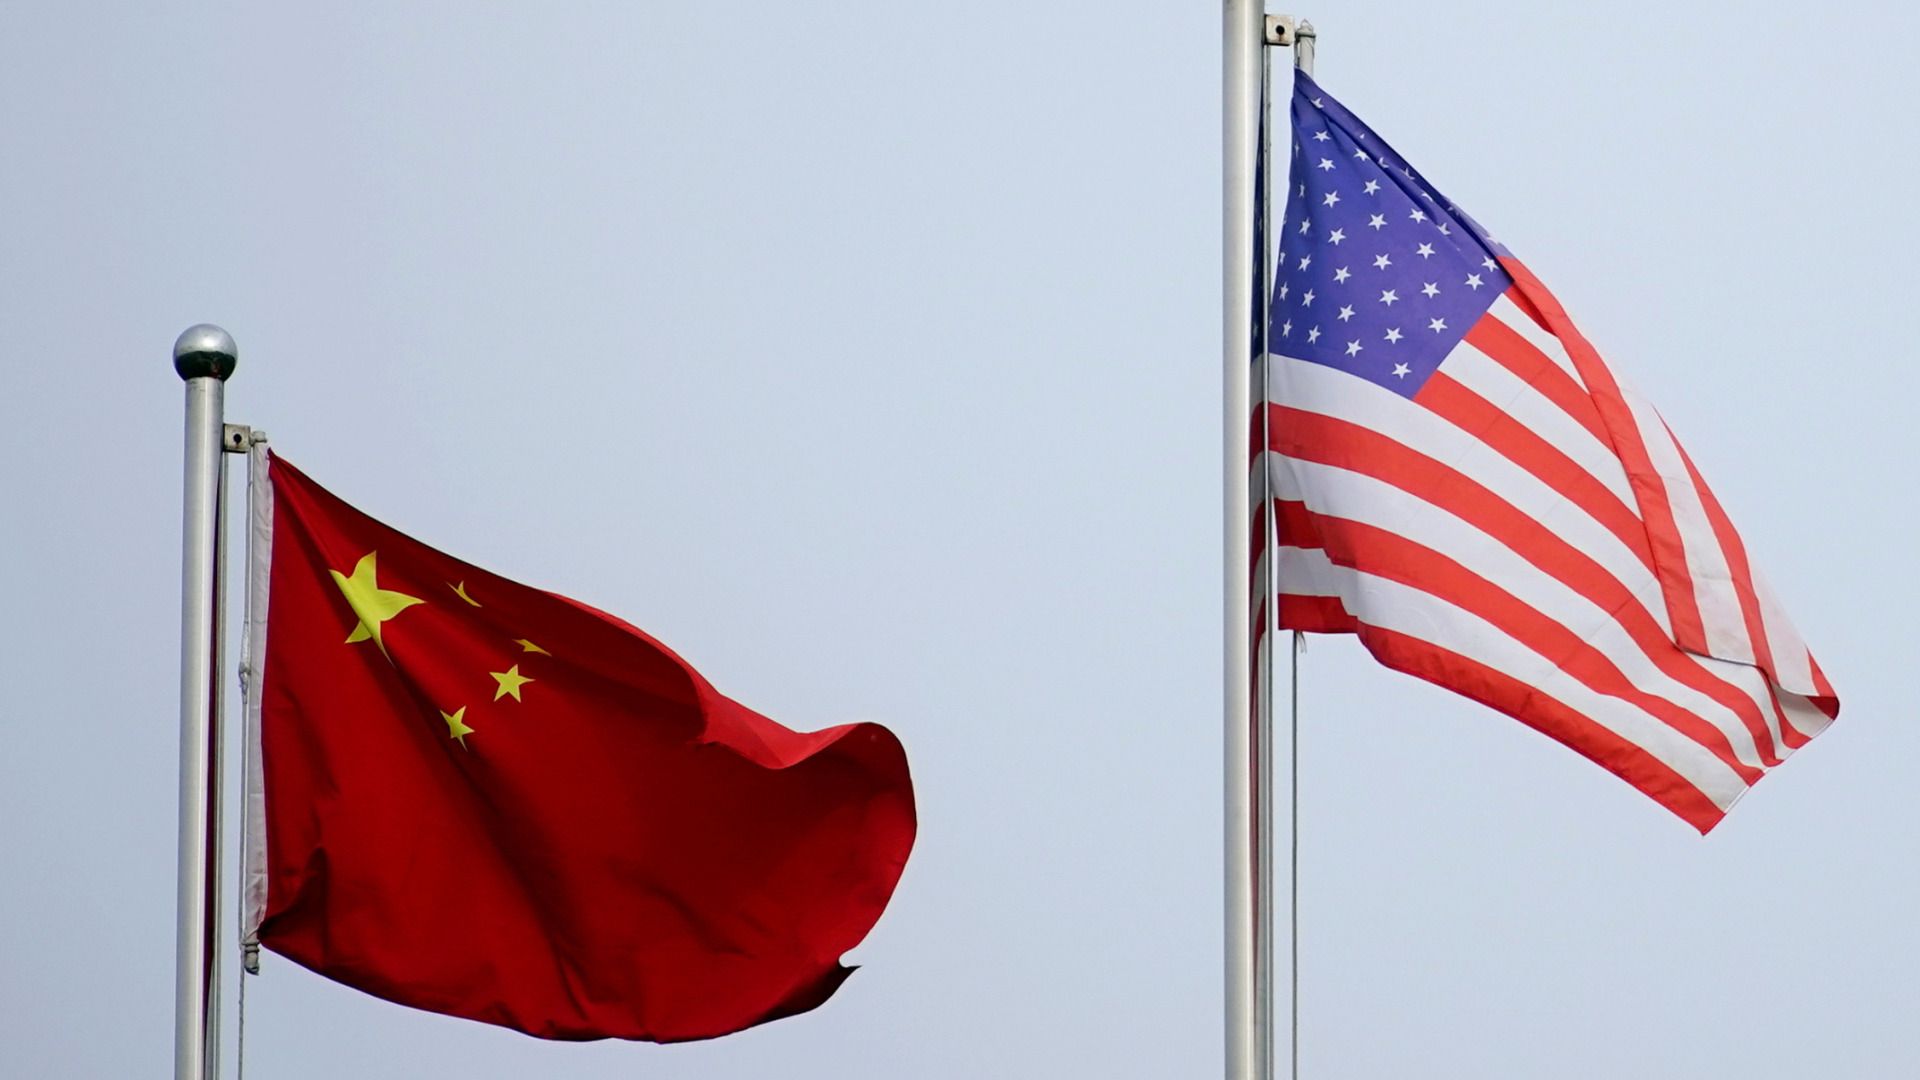 「米軍は中国軍より弱い」とアメリカが主張する狙いは？（遠藤誉） - エキスパート - Yahoo!ニュース